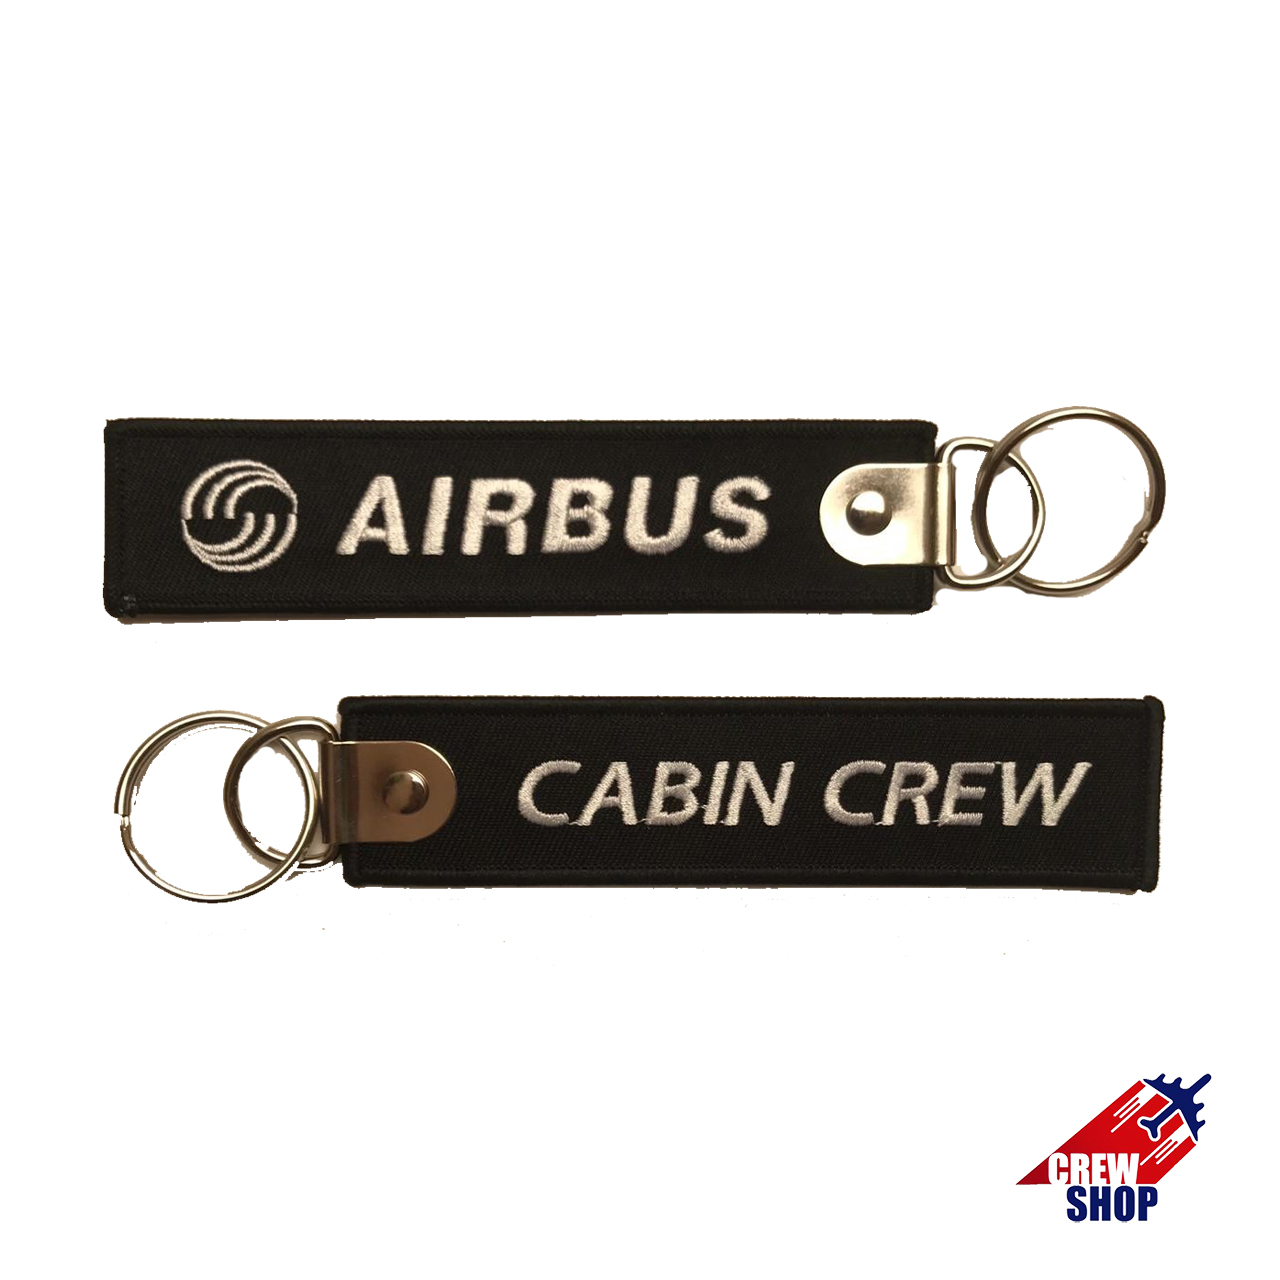 AIRBUS-CABIN CREW